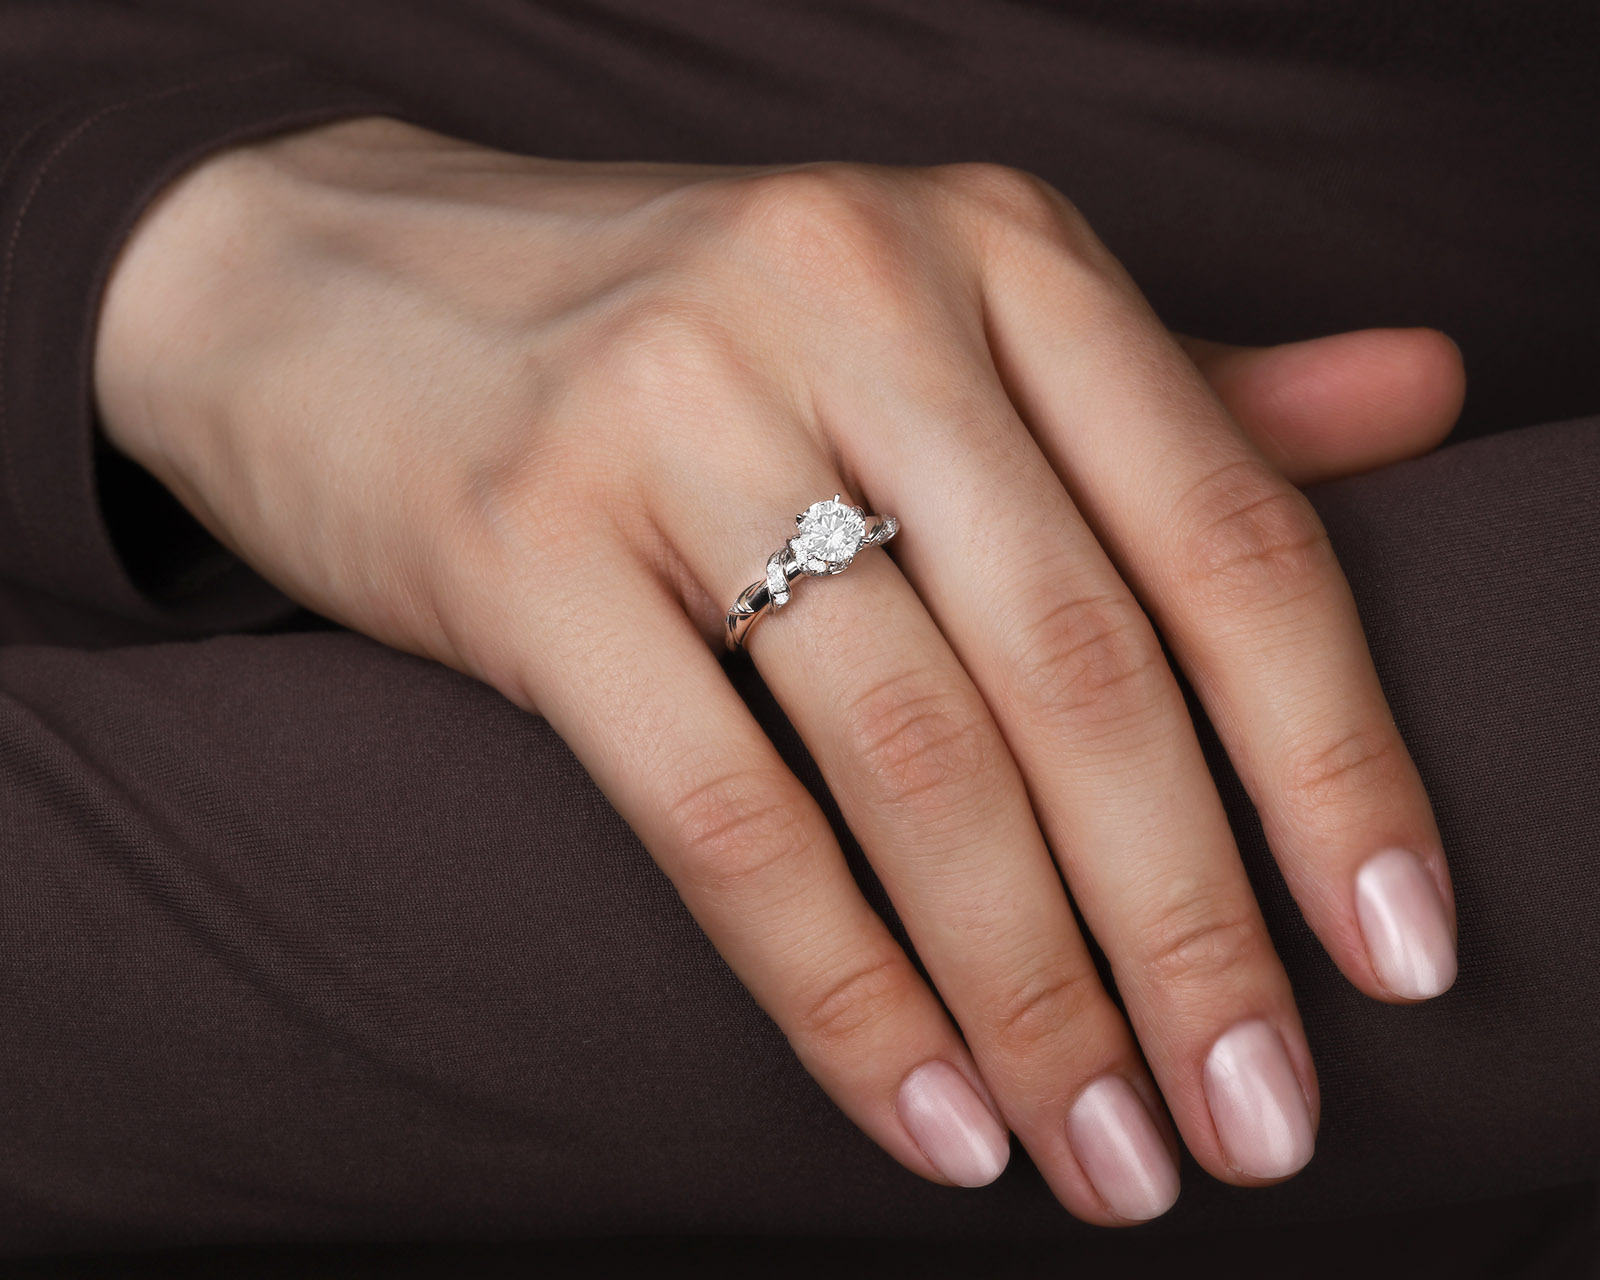 Оригинальное золотое кольцо с бриллиантами 1.32ct Dior